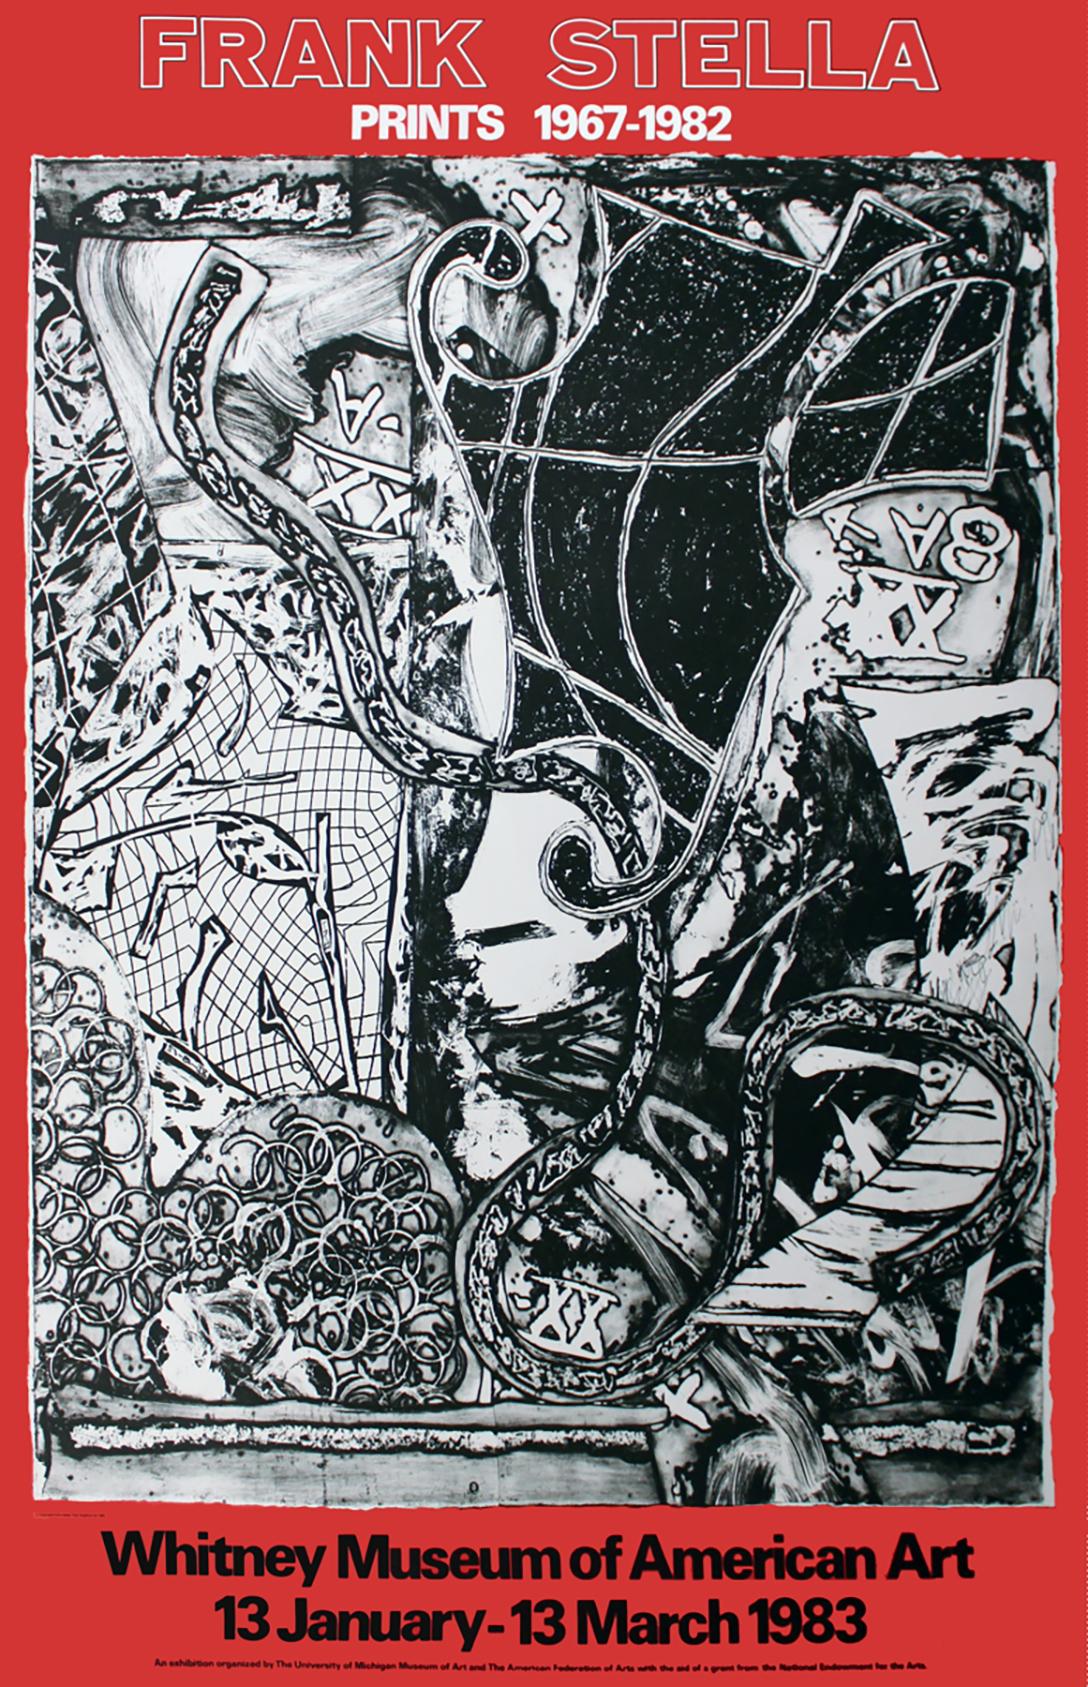 Frank Stella
"Drucke 1967-1982"
Whitney Museum of American Art, New York, 1983
Offsetlithografie-Poster
74 3/4 × 52 1/4 Zoll
Vorzeichenlos

Dieses Plakat wurde für die Frank Stella-Ausstellung "Prints 1967-1982" im Whitney Museum of American Art